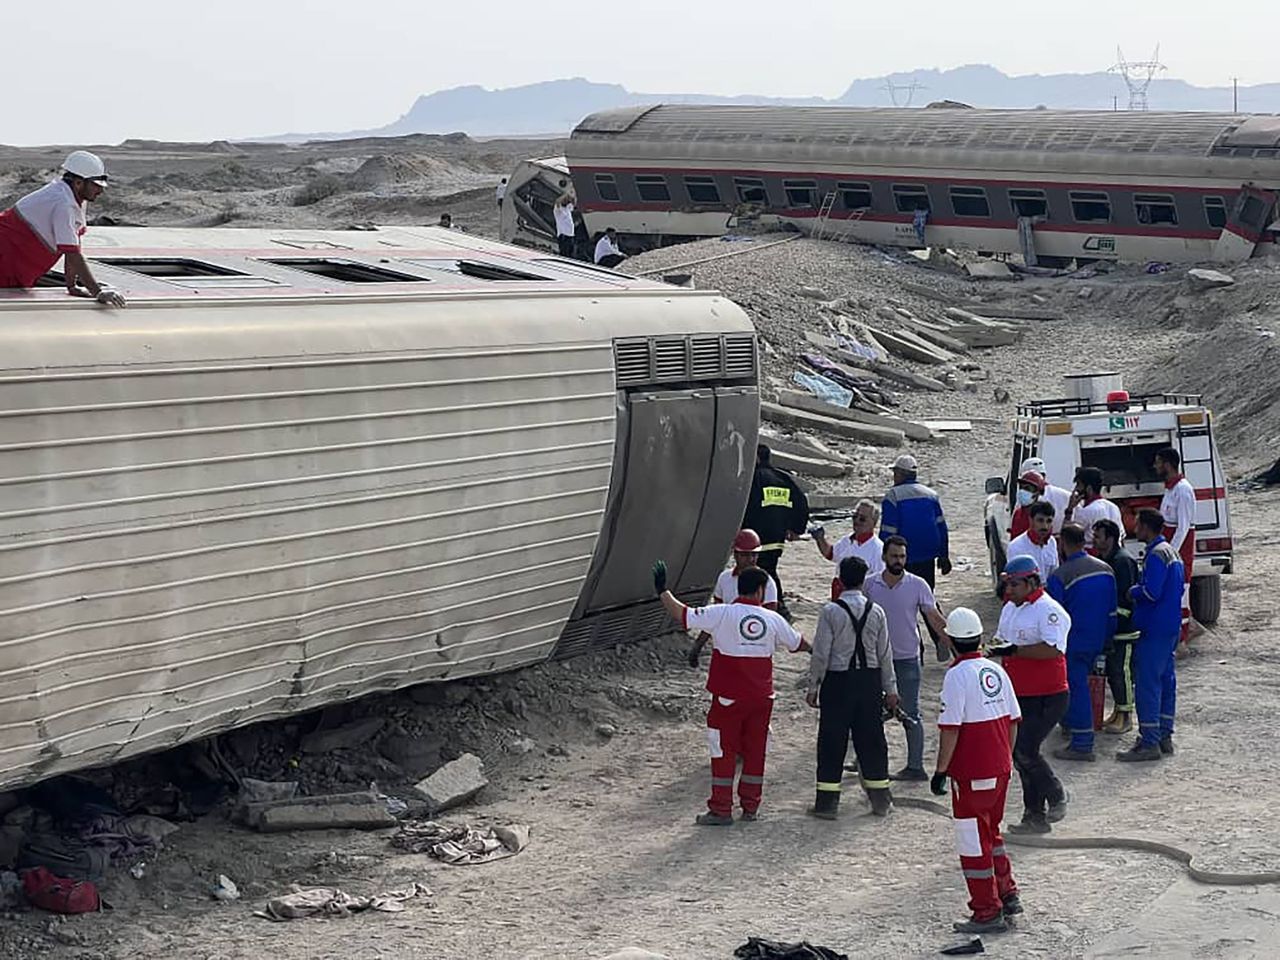 Train derailment kills at least 17 in Iran